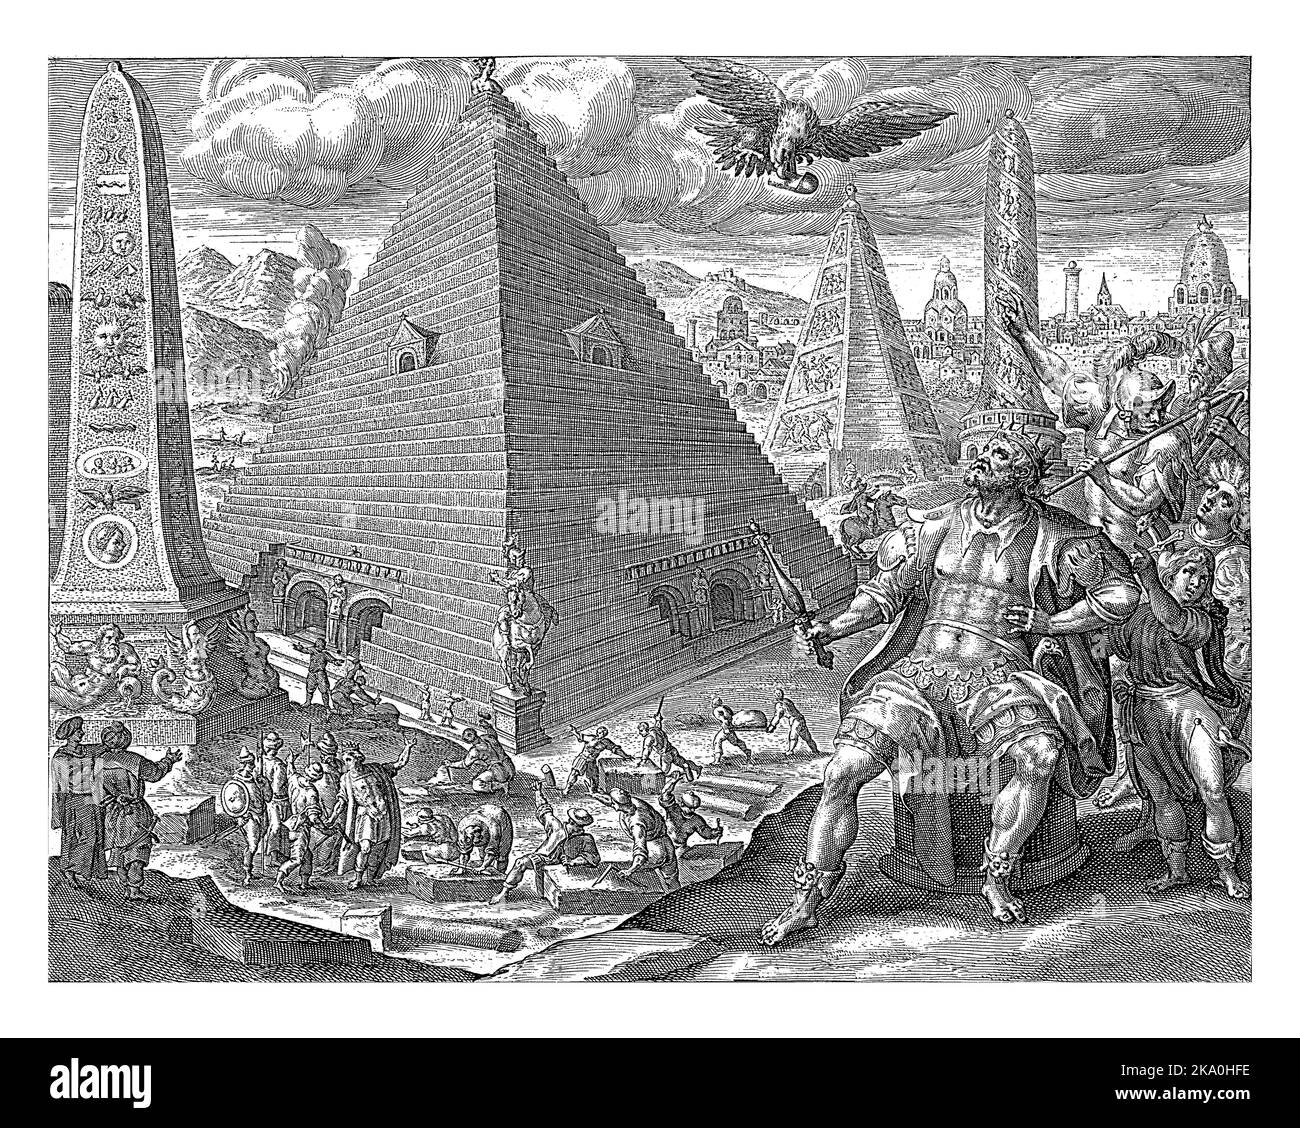 Ägyptische Pyramiden und Obelisken. Slaves schöpfen Ton aus dem Fluss, der dann zu Ziegeln für die Konstruktionen in einem Brennofen gebacken wird.im Vorgeg Stockfoto